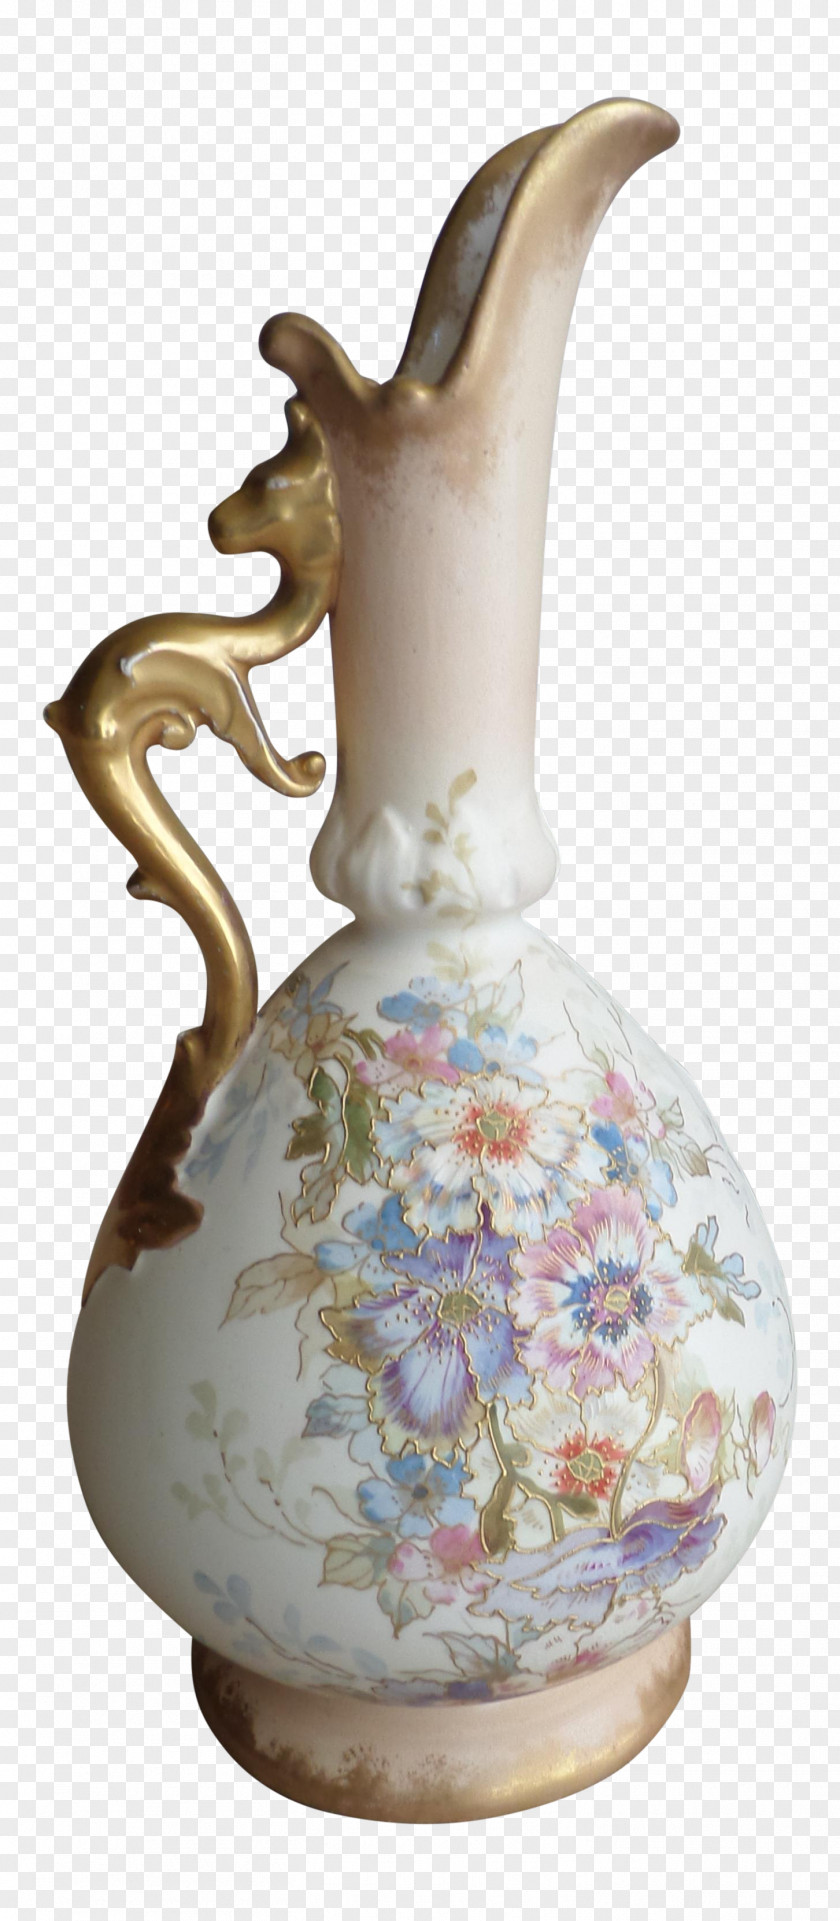 Vase Jug Pitcher Porcelain Bonn PNG